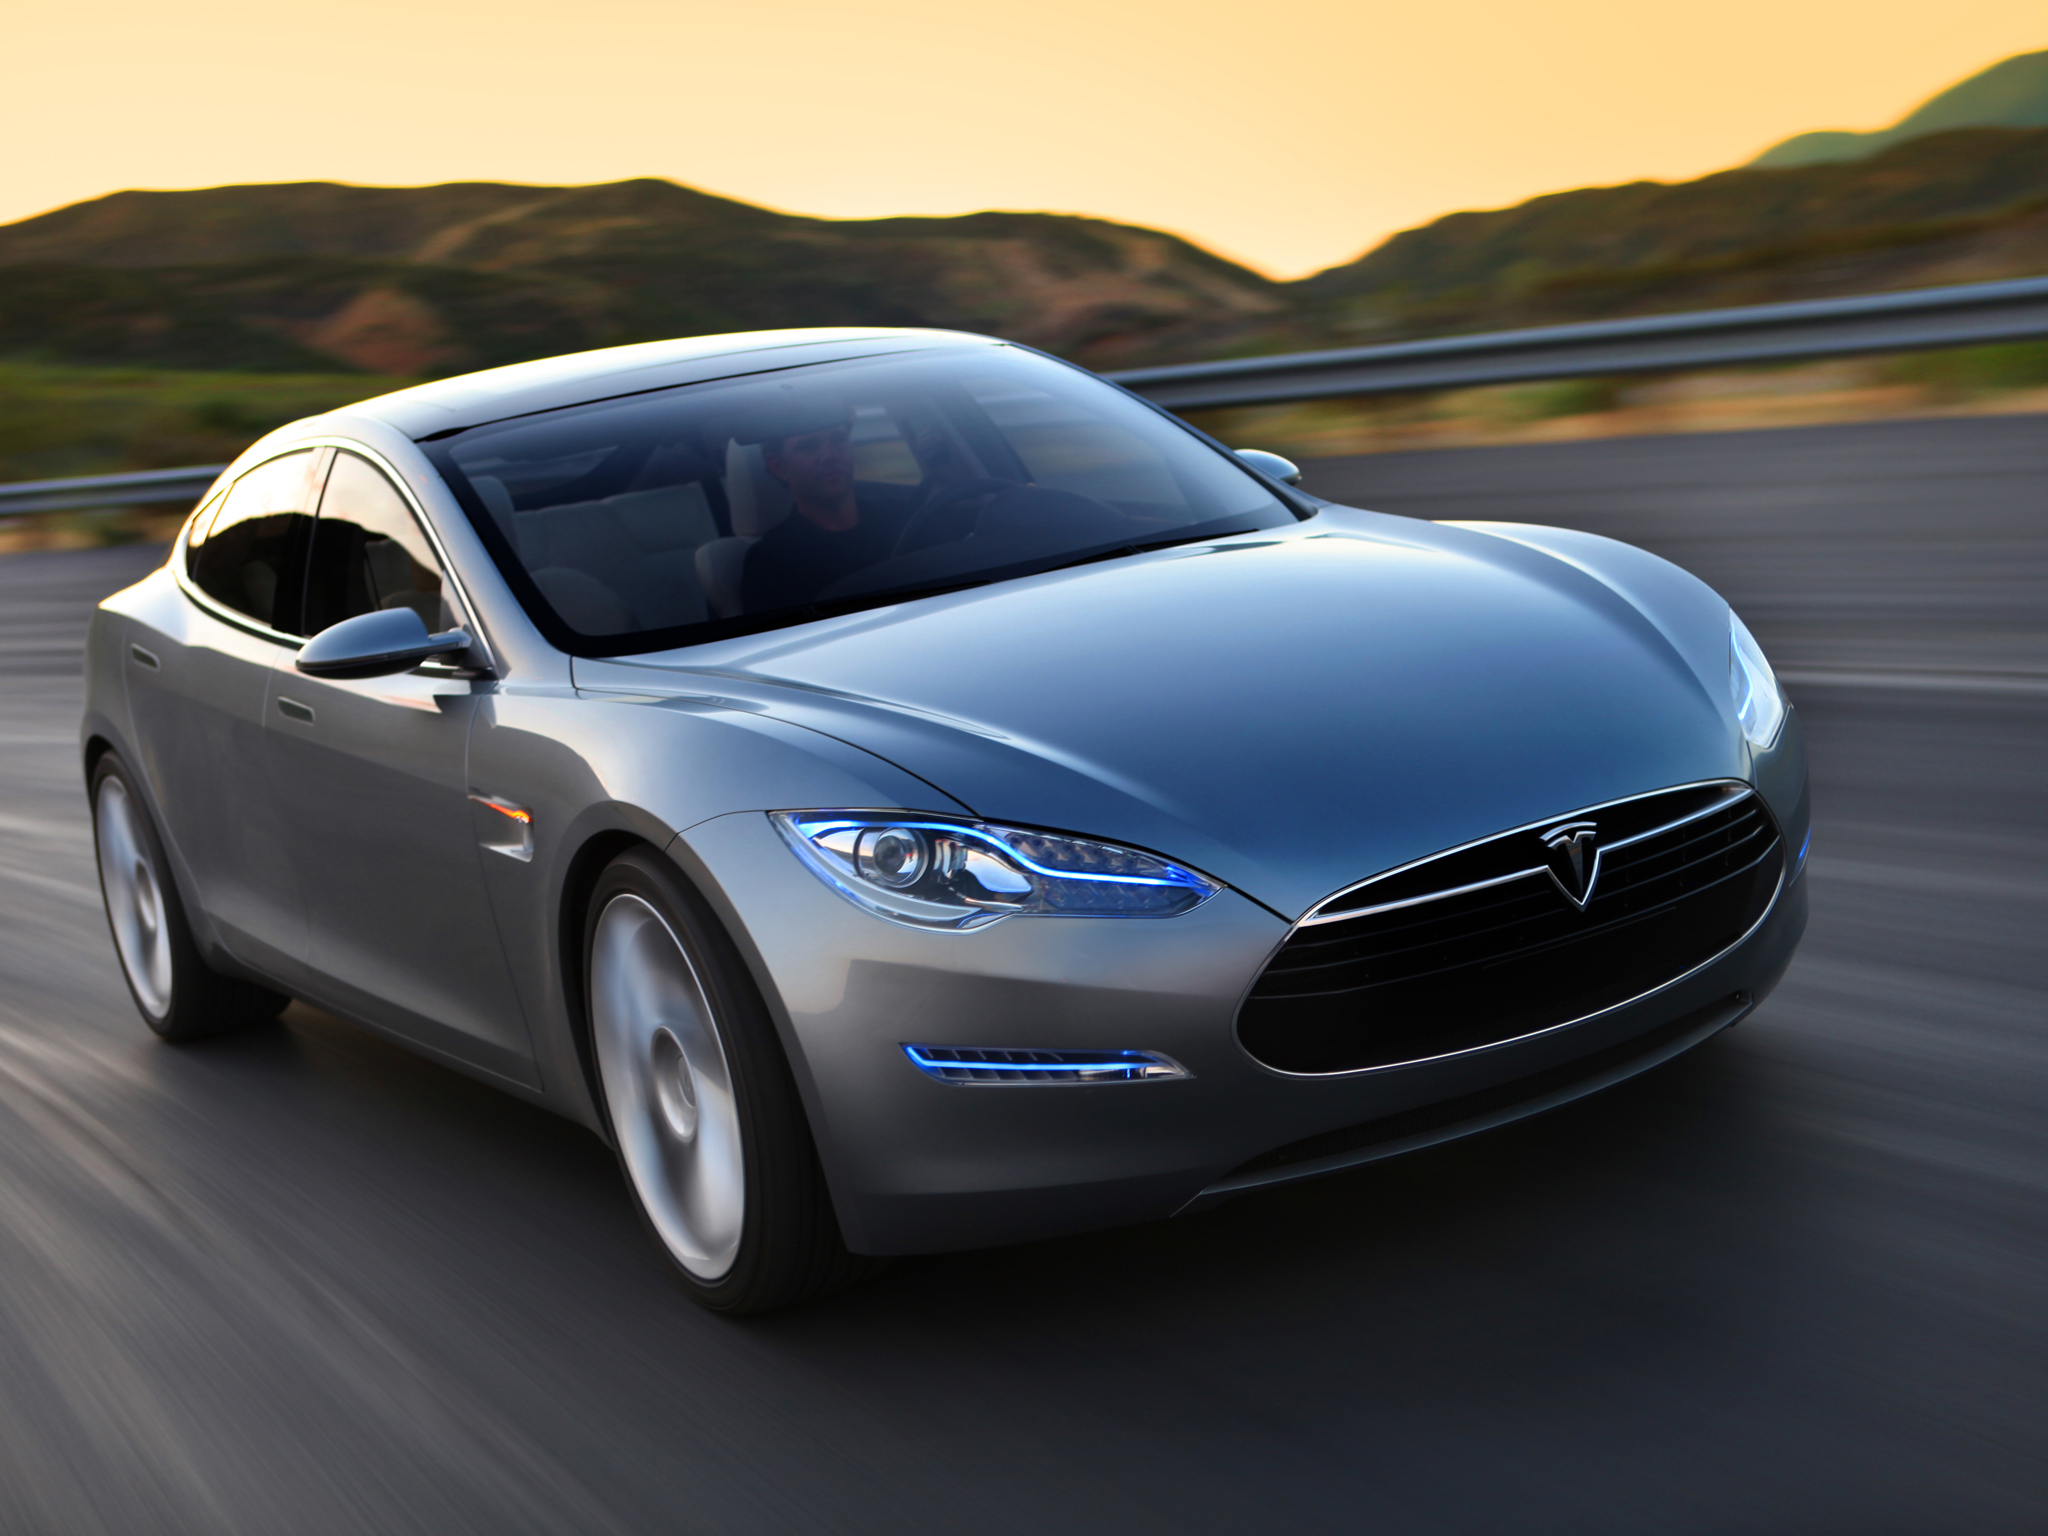 2009, Tesla, Model s, Concept, Supercar Wallpaper